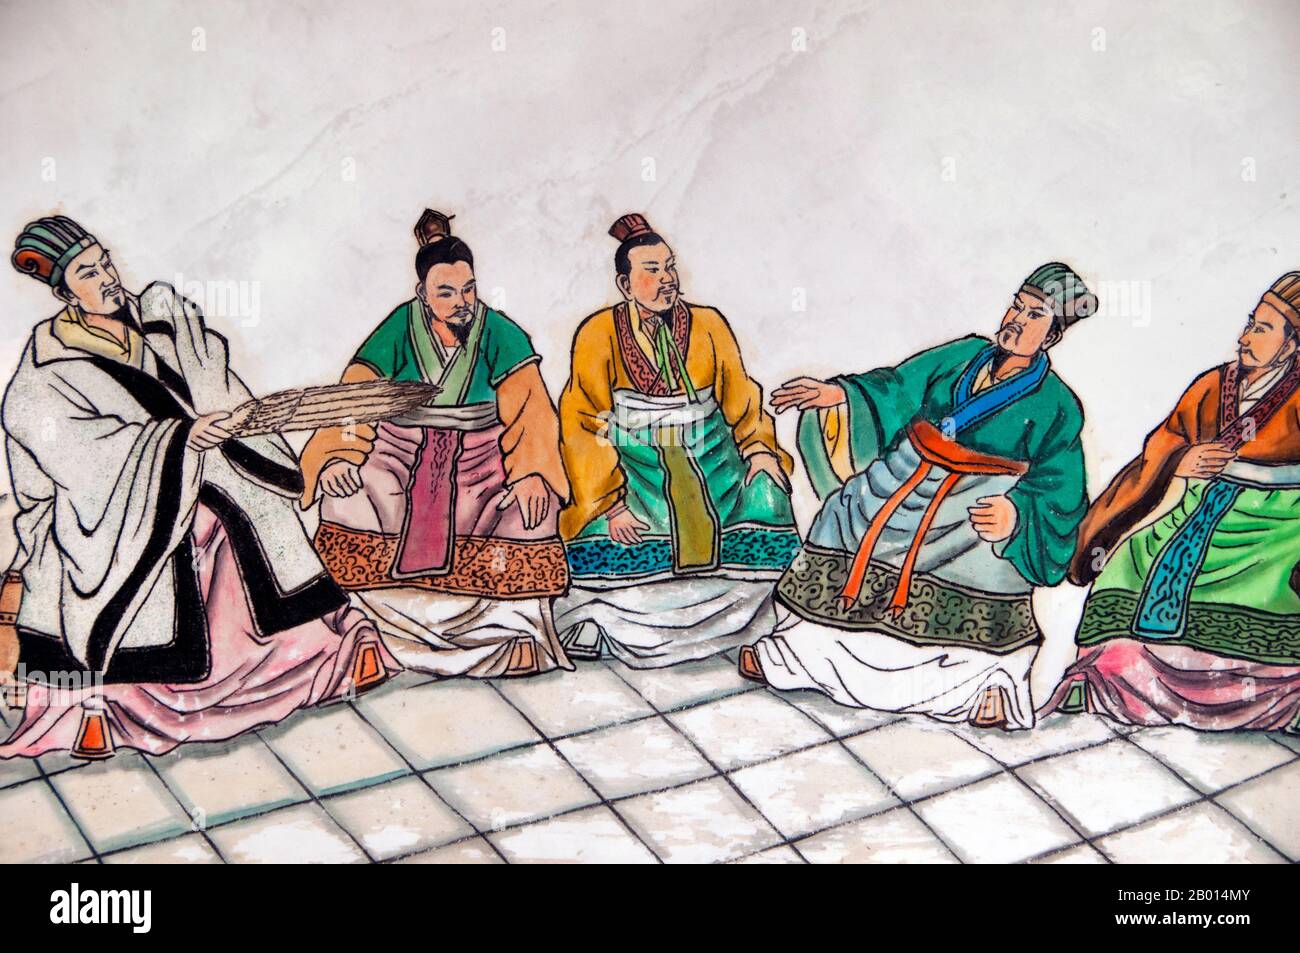 China: Szenen aus „die Romantik der drei Königreiche, Wuhou CI (Wuhou Ancestral oder Gedächtnishalle), Chengdu, Provinz Sichuan. Wuhou CI ist Zhuge Liang, dem Helden des Klassikers „die Romantik der drei Königreiche“, und seinem Kaiser Liu bei gewidmet. Zhuge Liang (181–234) war Kanzler von Shu Han während der Zeit der drei Königreiche der chinesischen Geschichte. Er wird oft als der größte und versierteste Stratege seiner Zeit anerkannt. Chengdu, früher bekannt als Chengtu, ist die Hauptstadt der Provinz Sichuan im Südwesten Chinas. Stockfoto